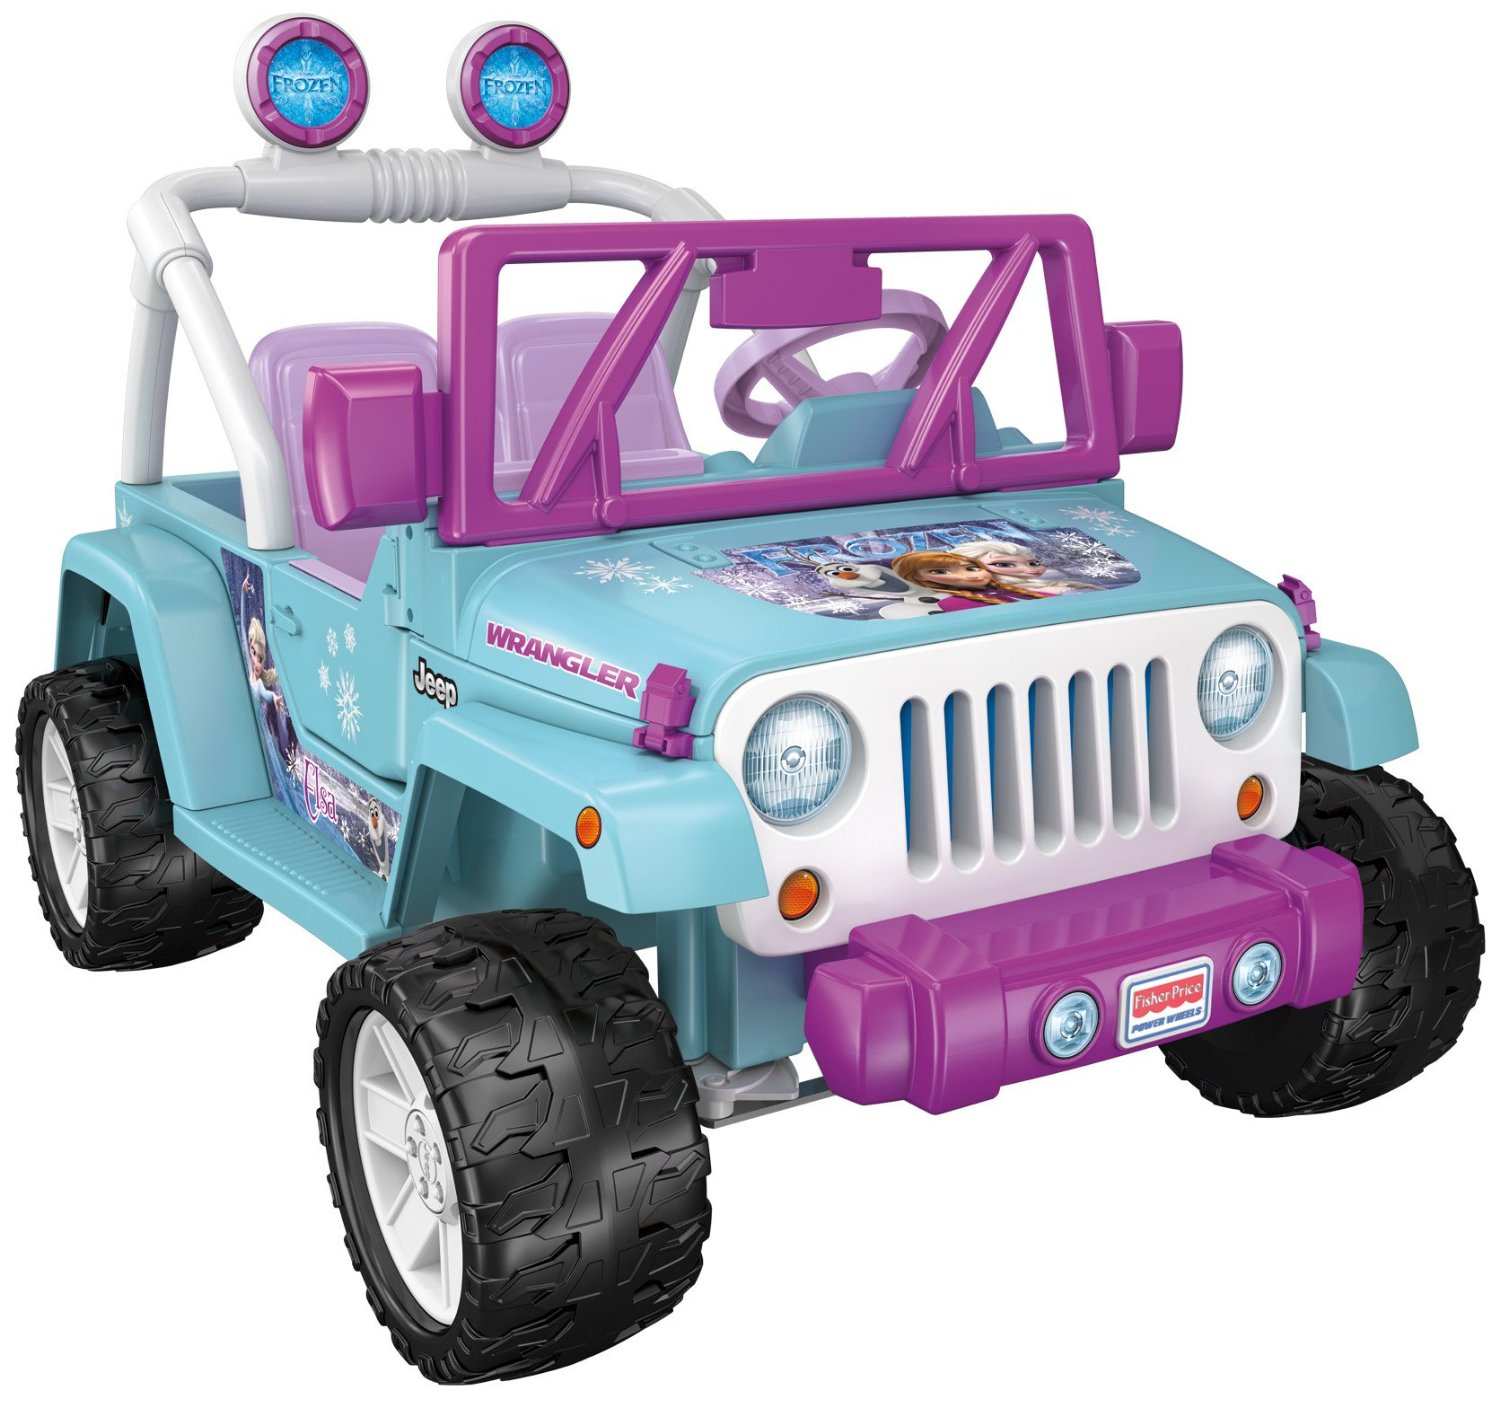 Disney princess jeep with radio #1